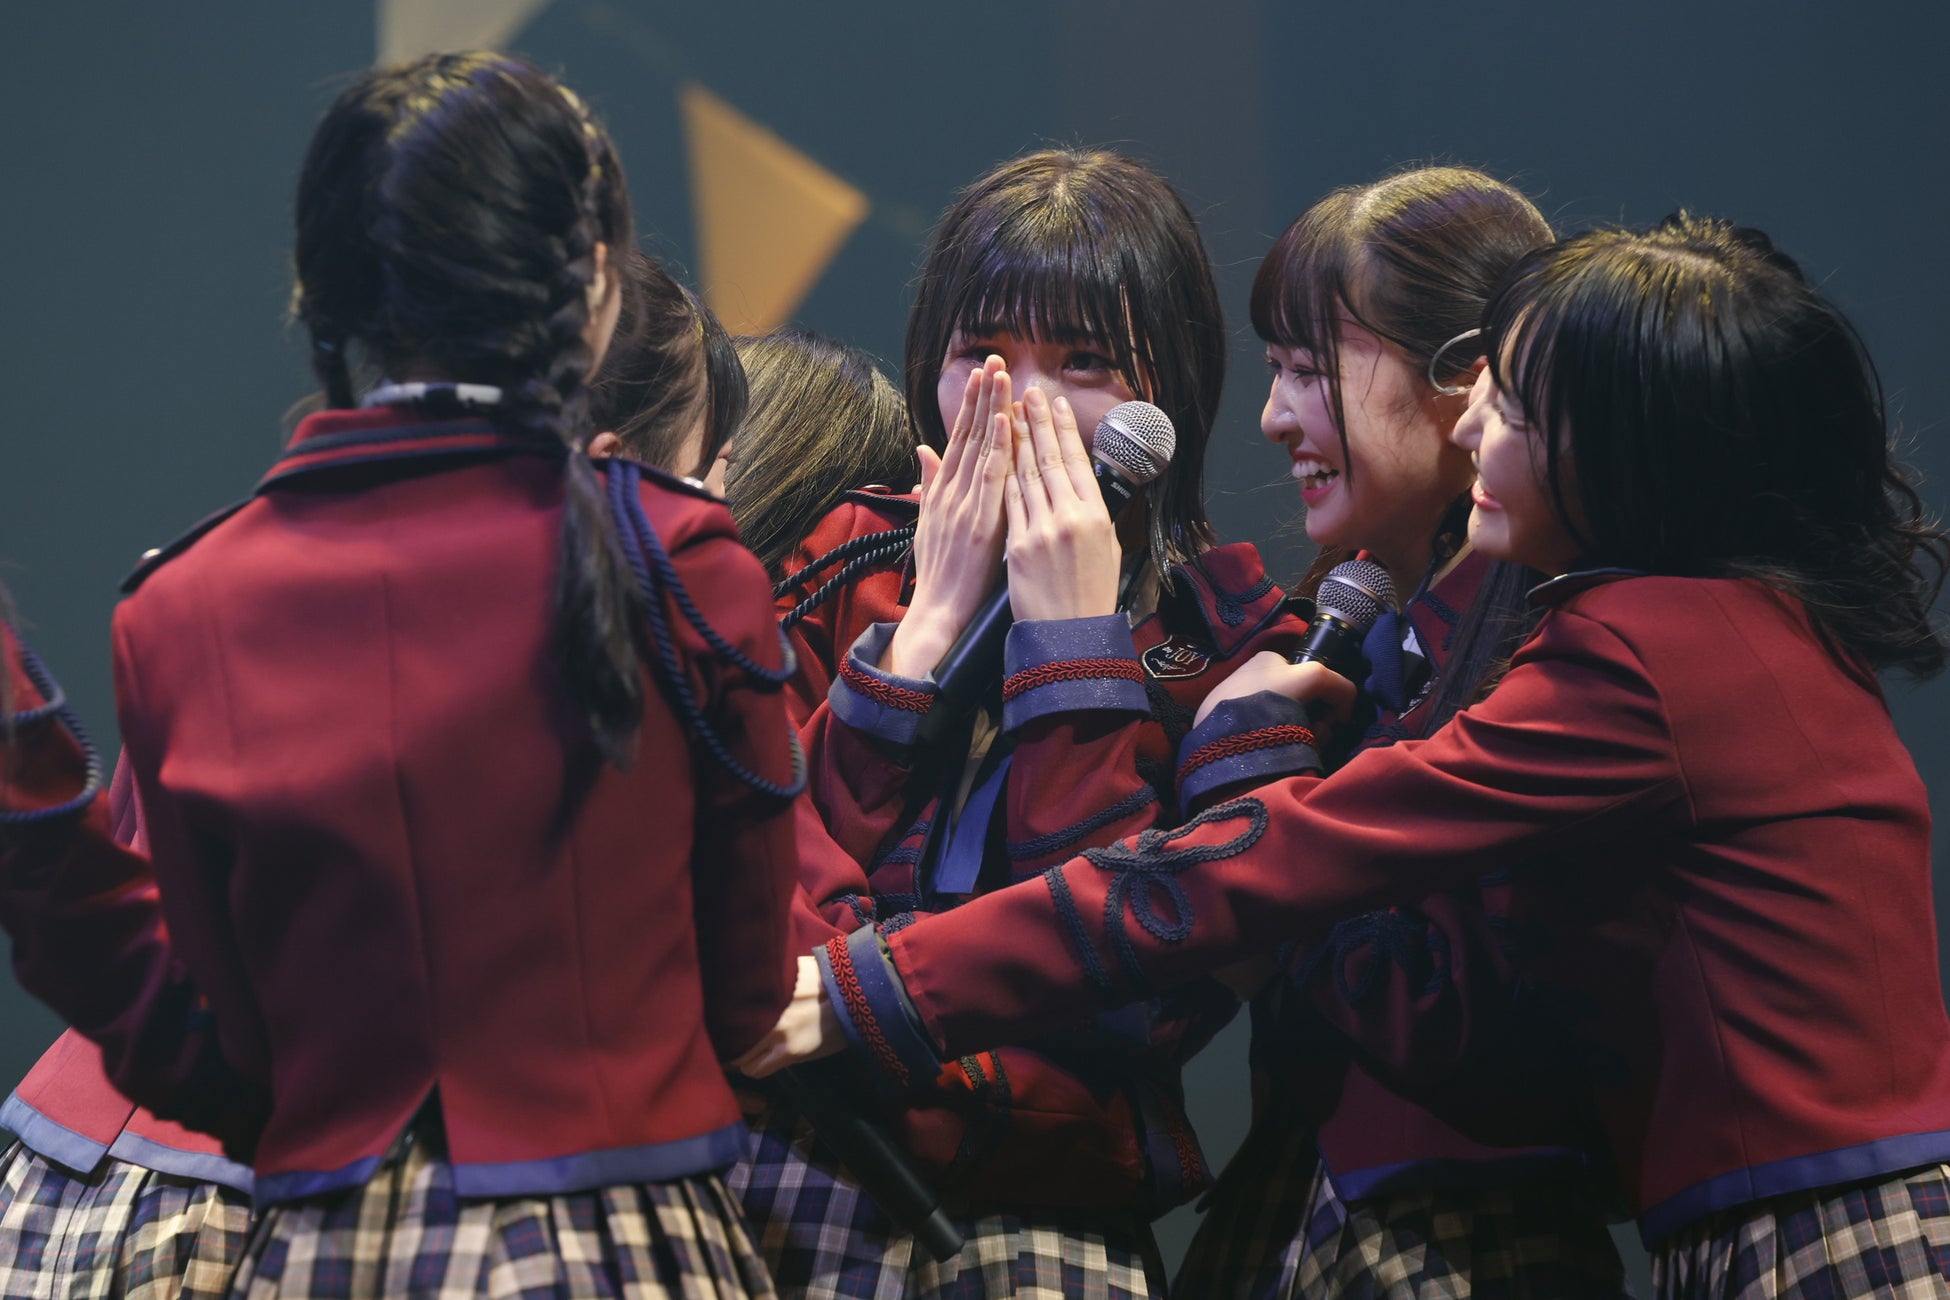 指原莉乃プロデュースによるアイドルグループ「≒JOY」≒JOY 1stコンサート「初めまして、≒JOYです。」をパシフィコ横浜 国立大ホールで開催！